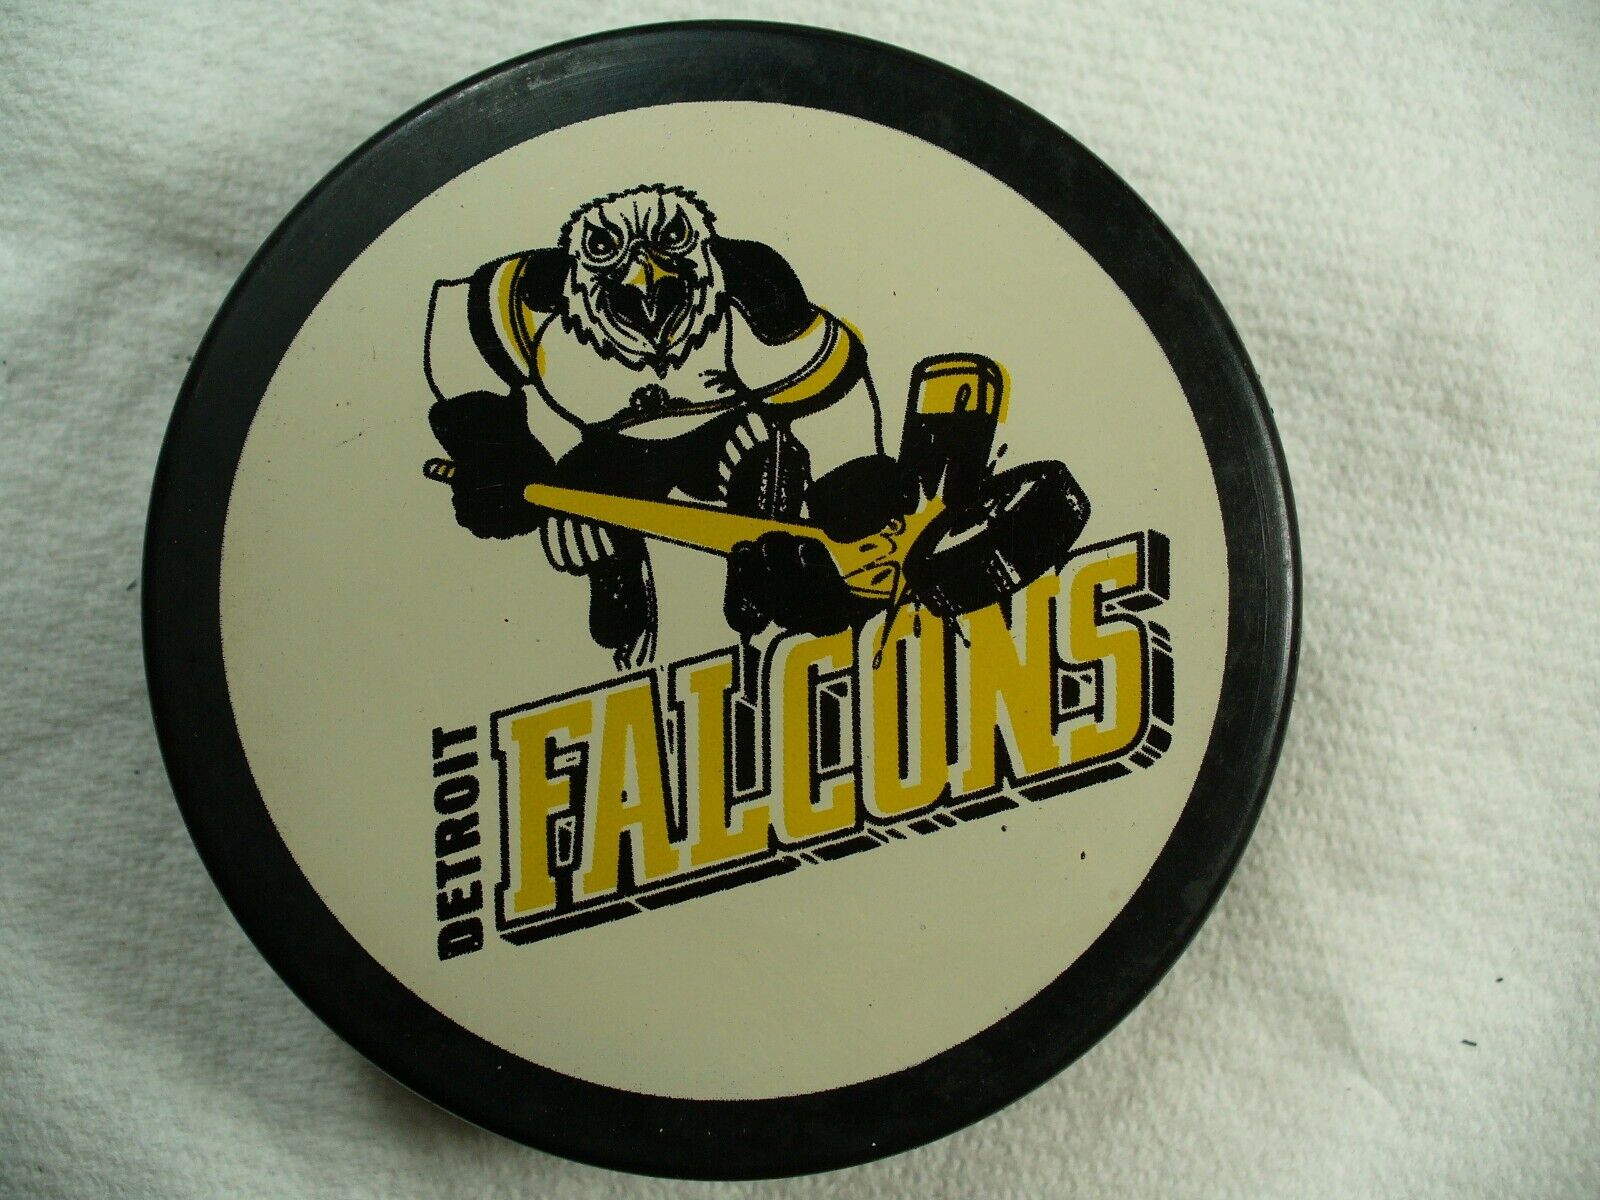 Detroit Falcons - CoHL logo - Official puck